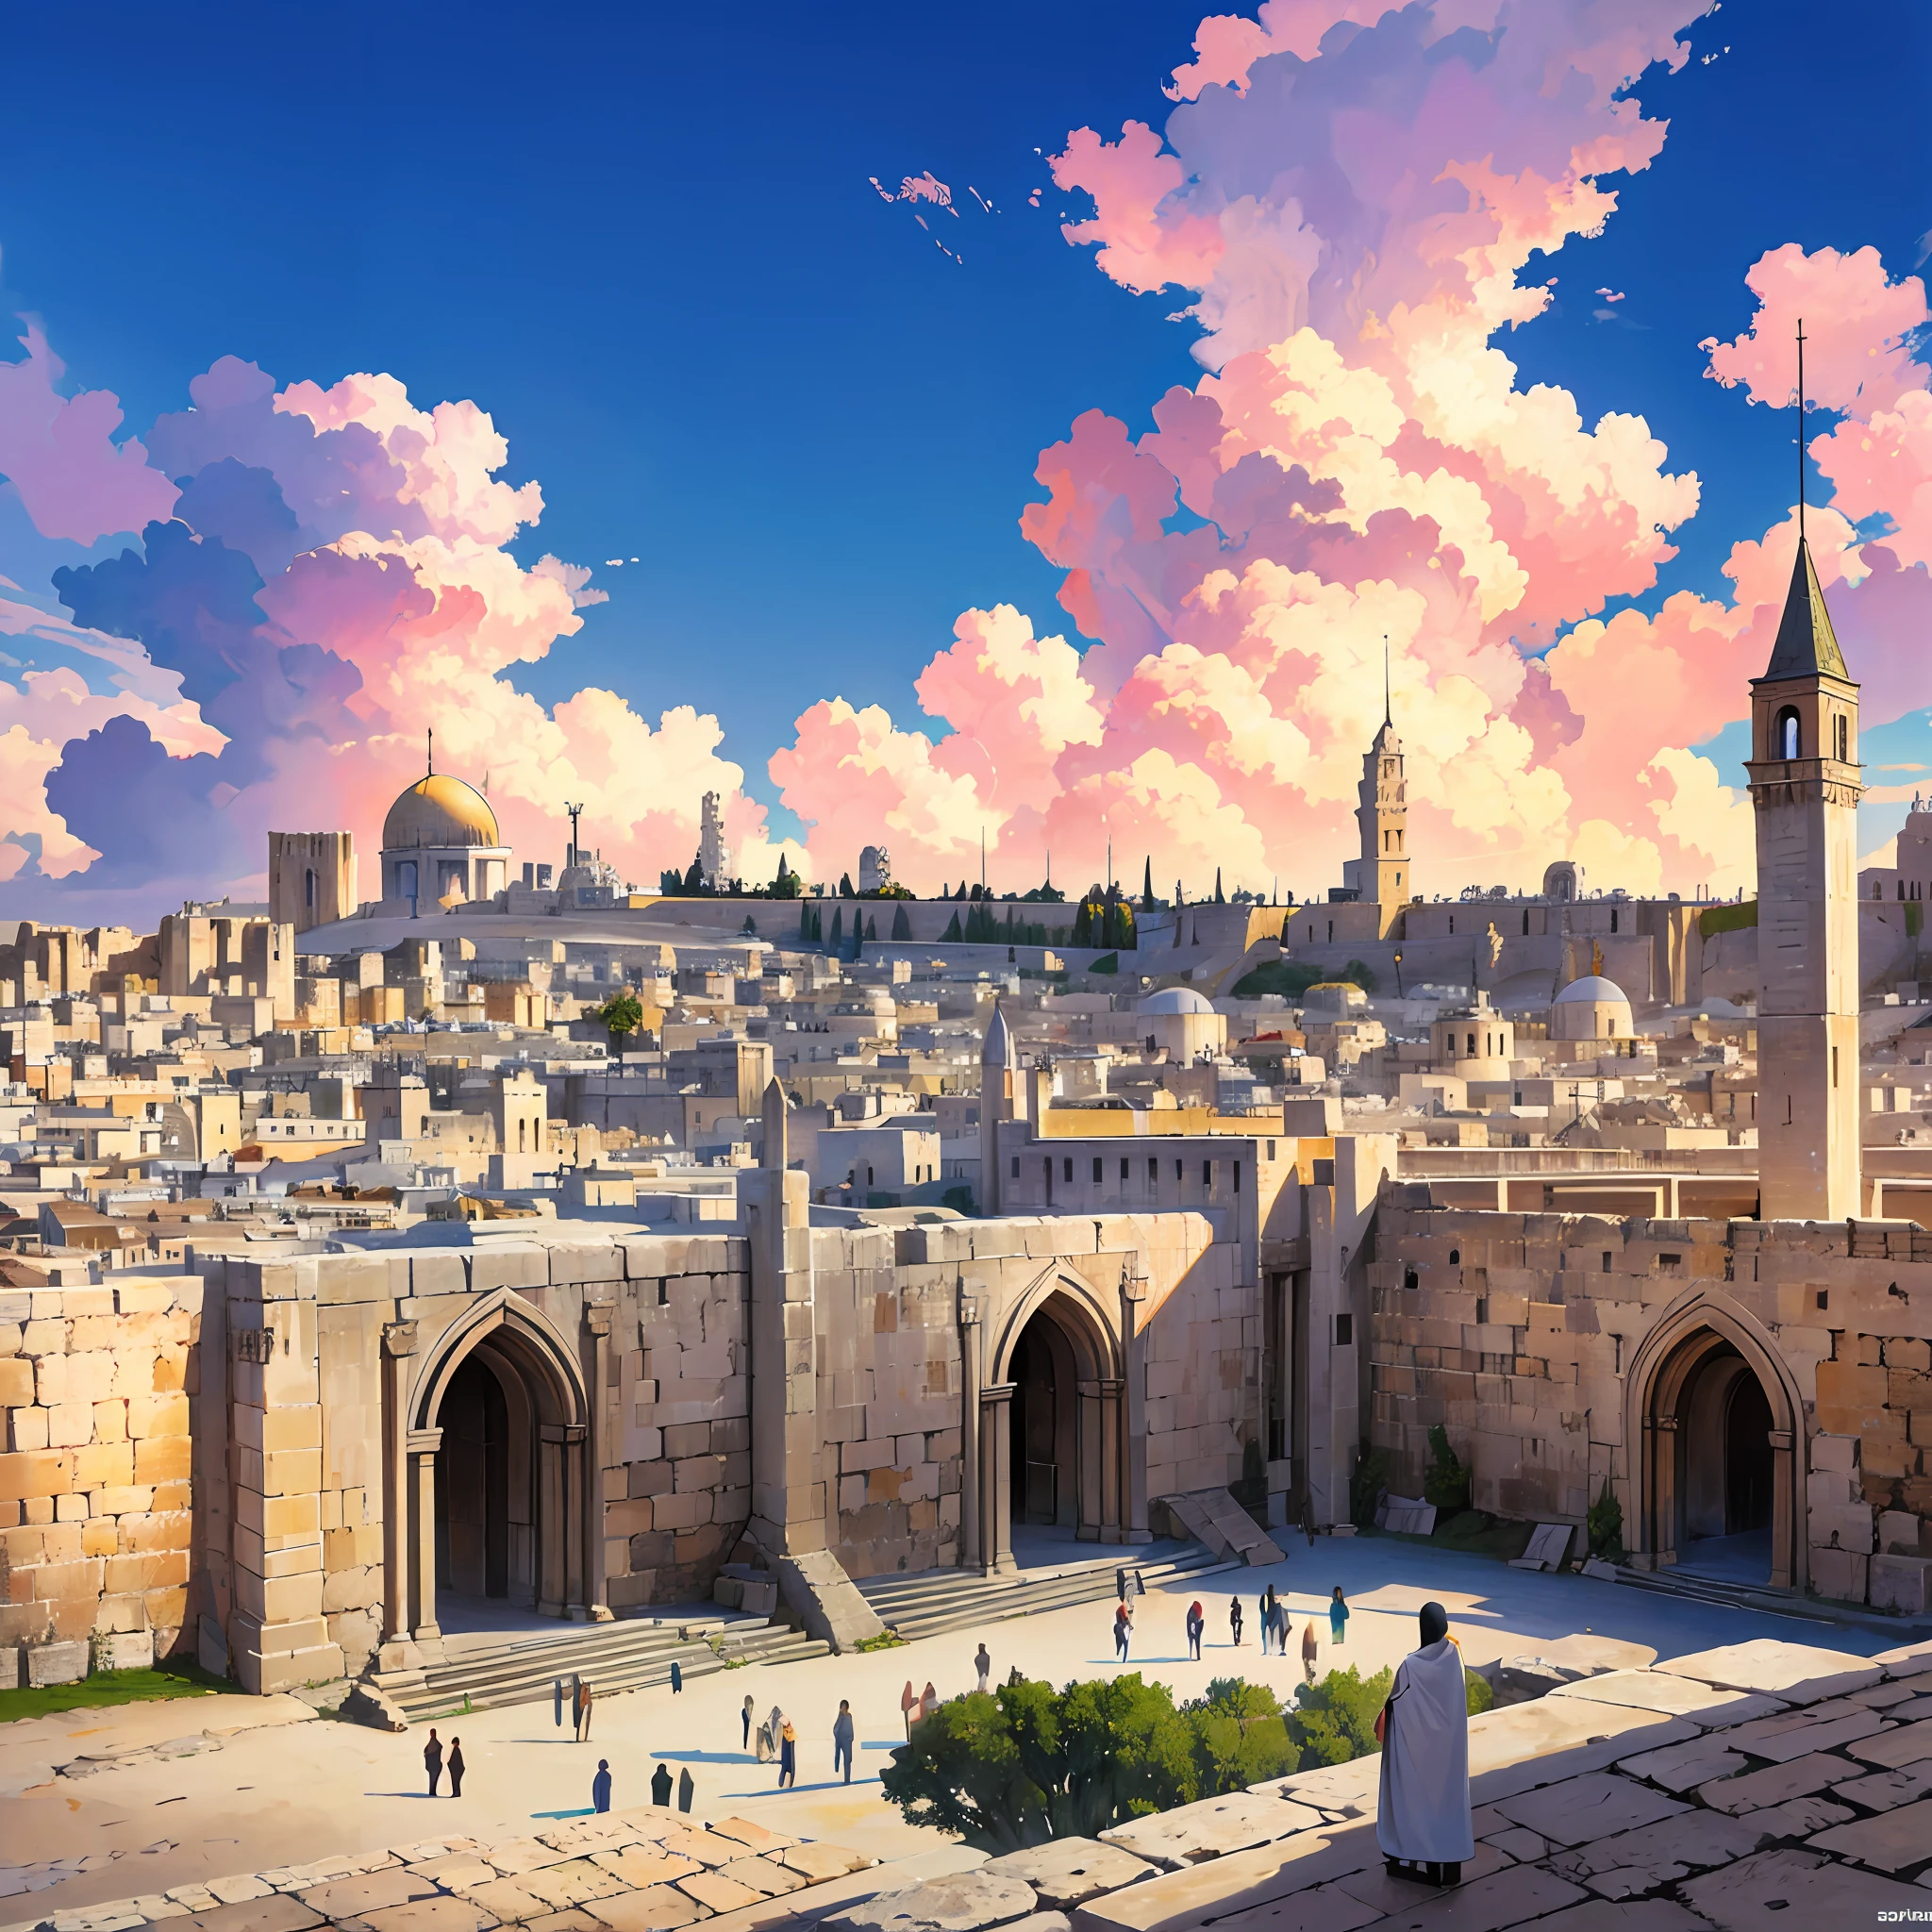 القدس القديمة, من زمن المسيح, صورة واقعية, السماء مع الغيوم, 16:9, 4K - تلقائي - S2